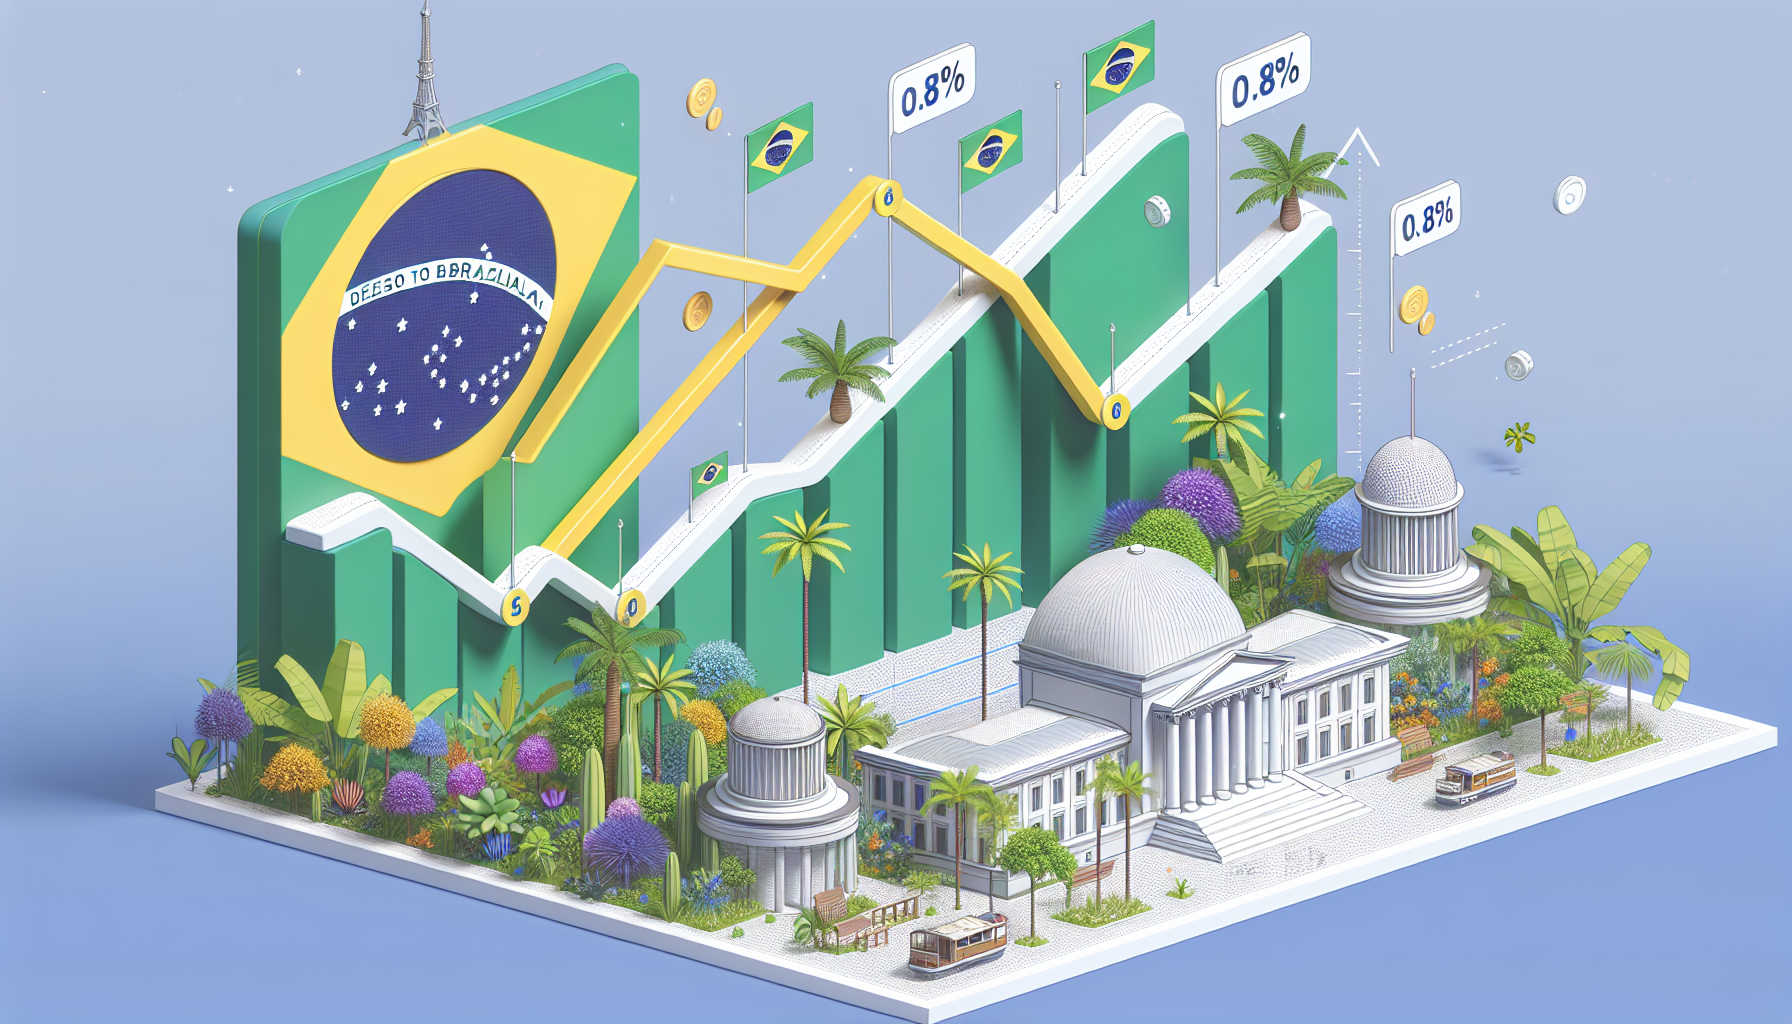 PIB do Brasil surpreende e registra crescimento de 0,8% no primeiro trimestre, superando expectativas do mercado; saiba mais detalhes